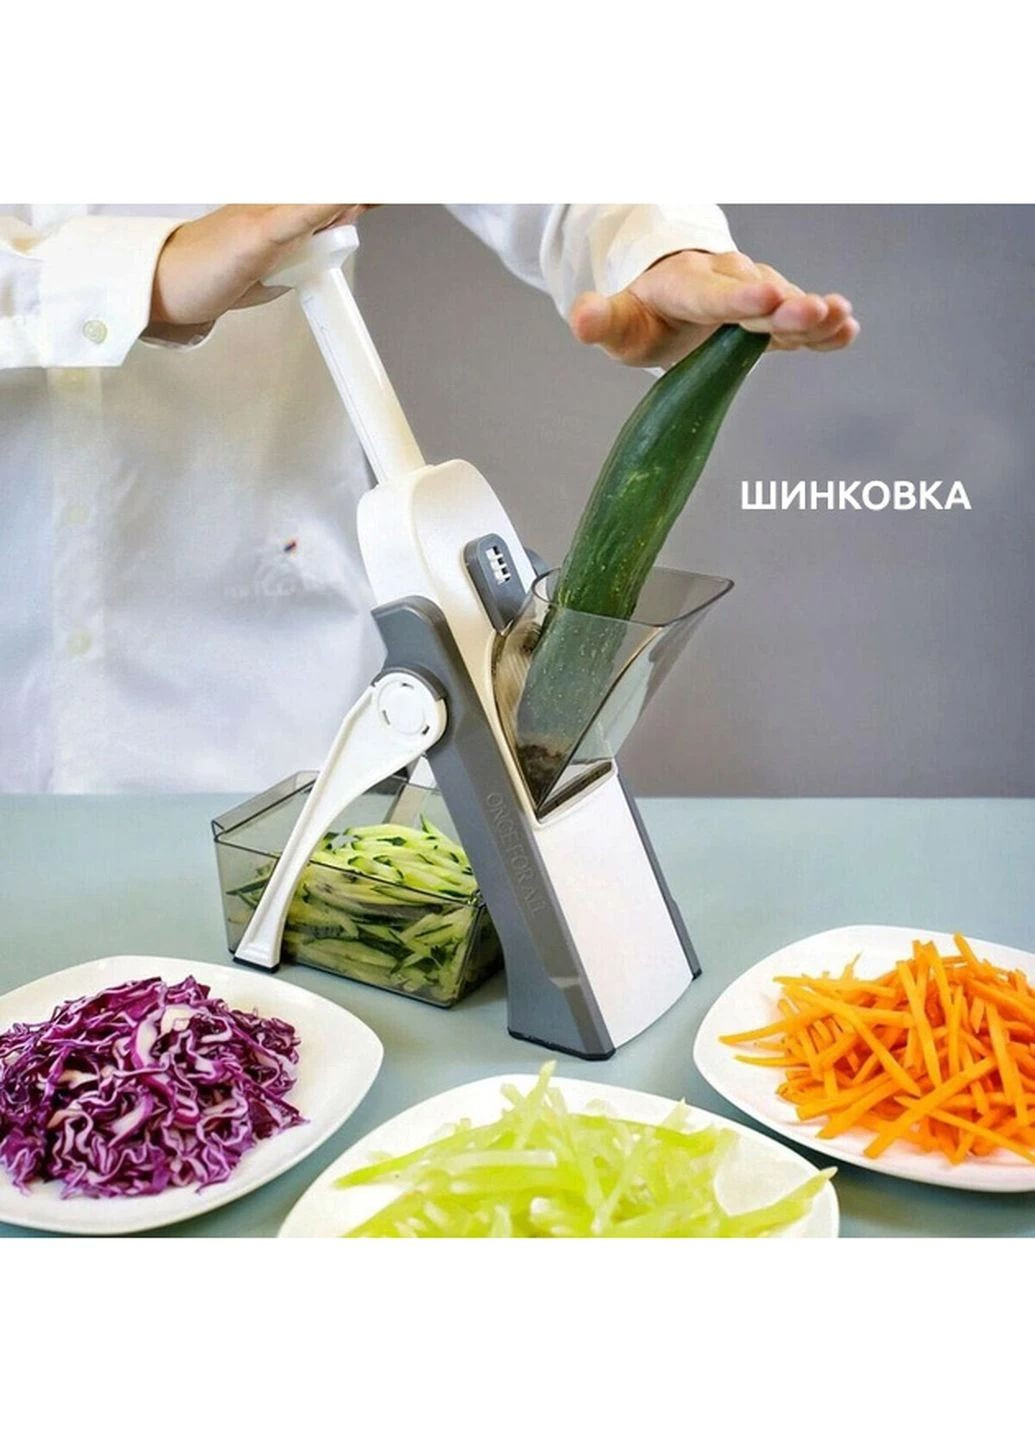 Многофункциональная овощерезка измельчитель слайсер терка для нарезки картошки овощей слайсами кубиками соломкой Brava (266989191)